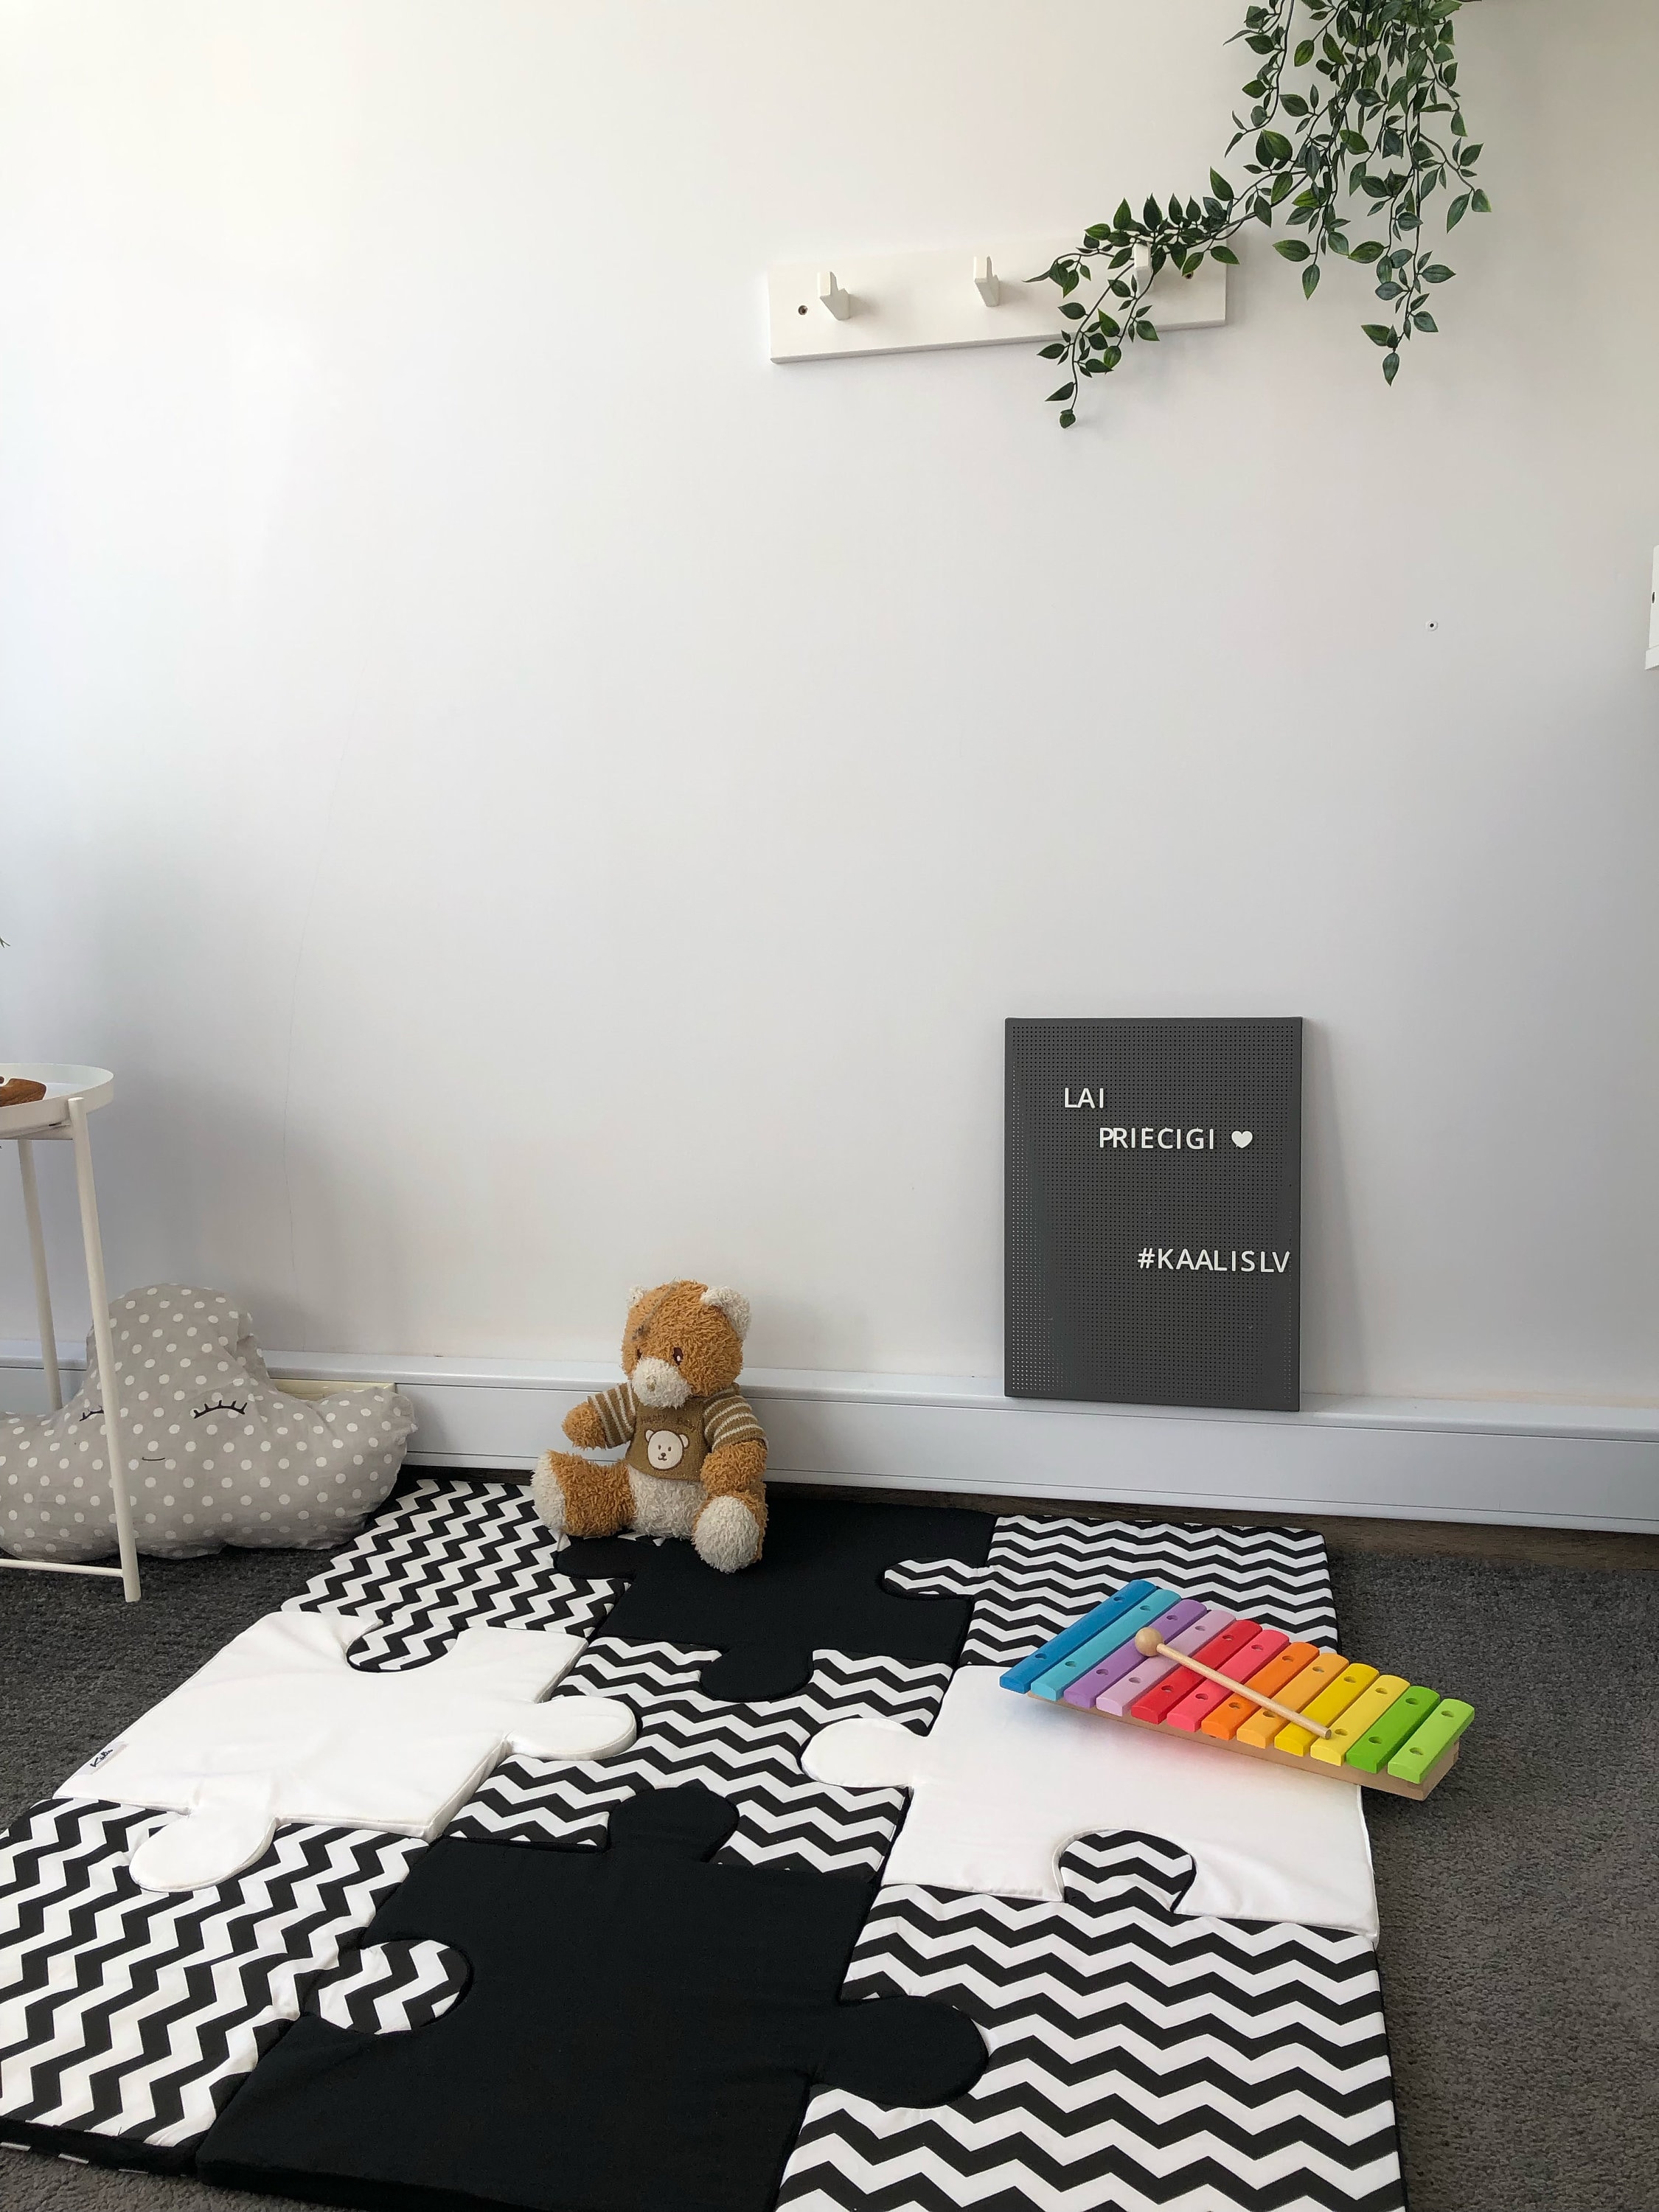  TBY Jigsaws Puzzle Play Mats, alfombra de gateo entrelazada  para bebé adecuado para la zona de juegos de niños, sala de estar,  dormitorio, gimnasio, decoración perfecta del hogar, beige y marrón